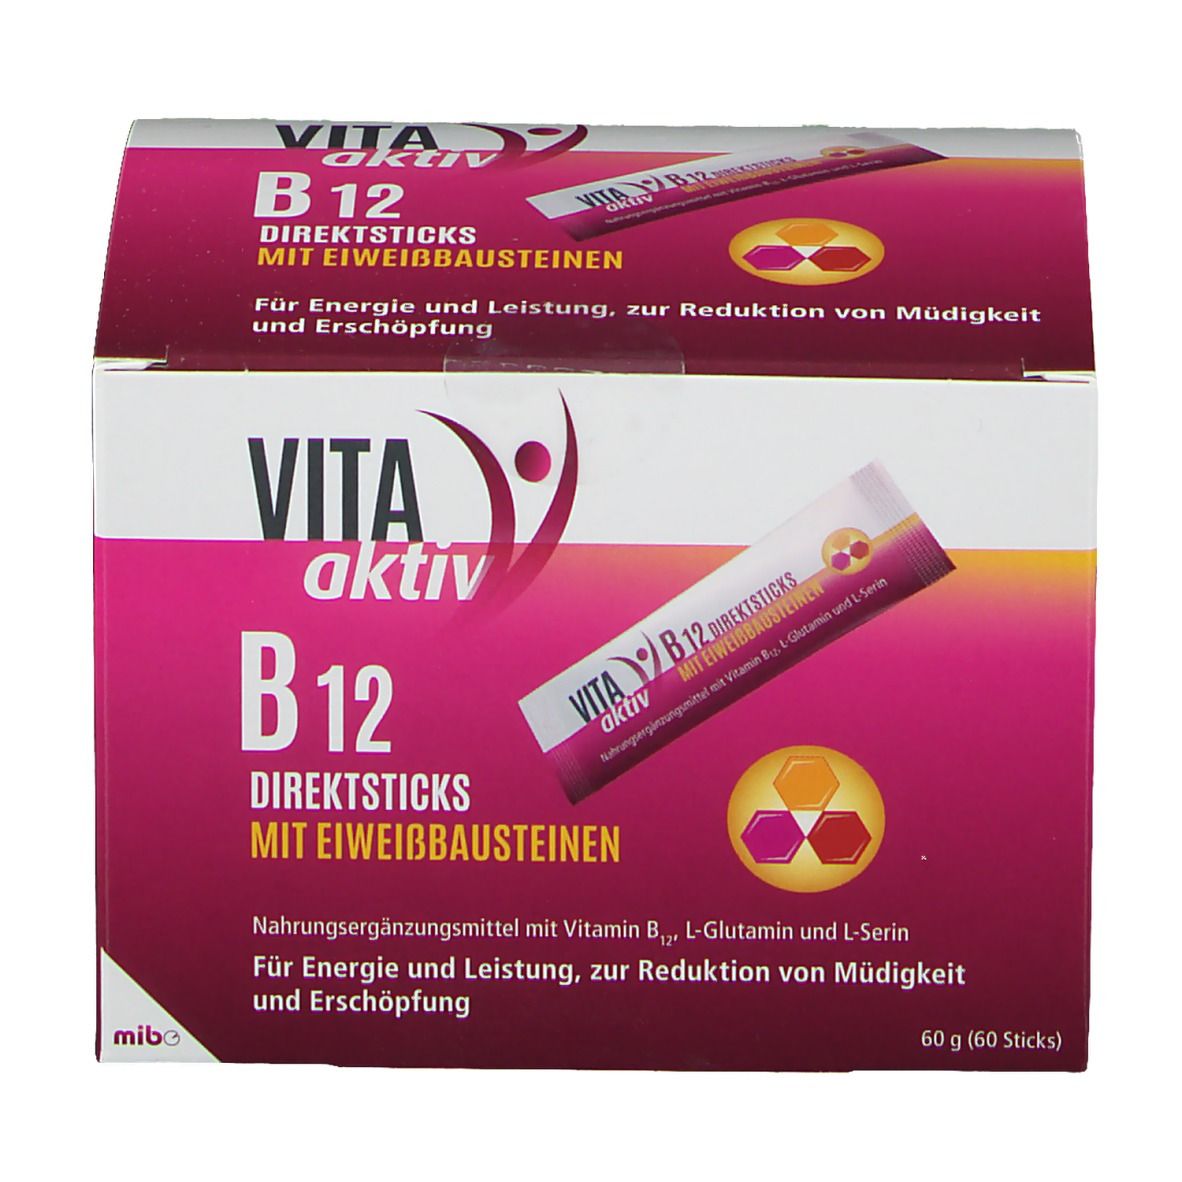 VITA aktiv B12 DIREKTSTICKS mit Eiweißbausteinen